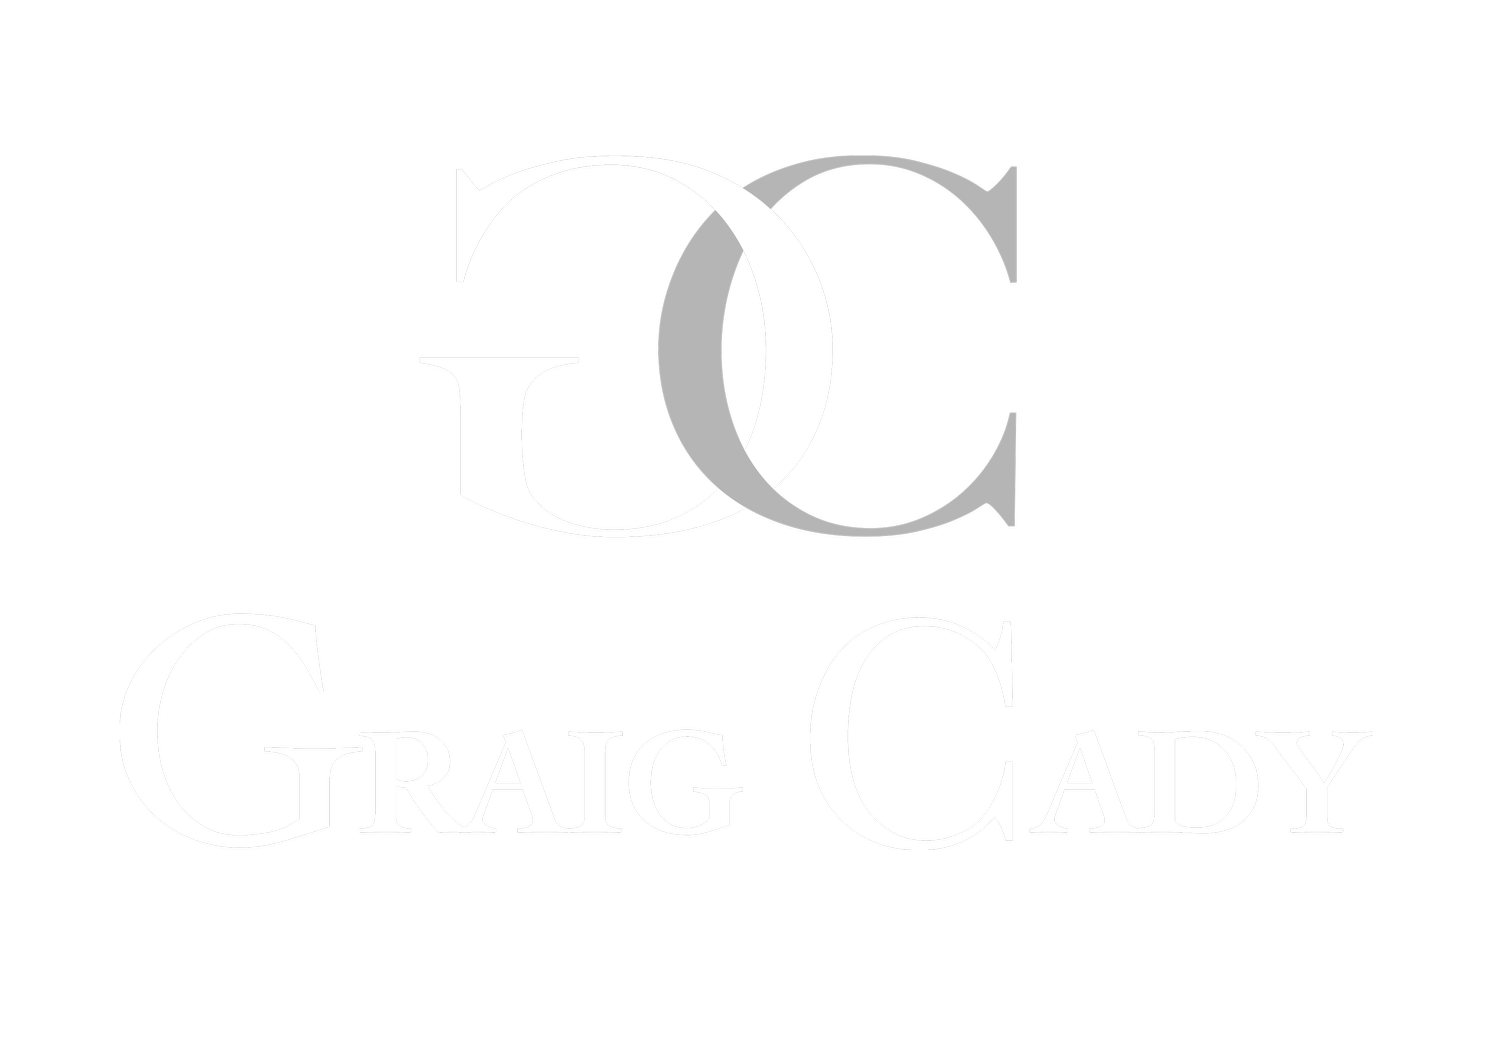 Graig Cady Design 